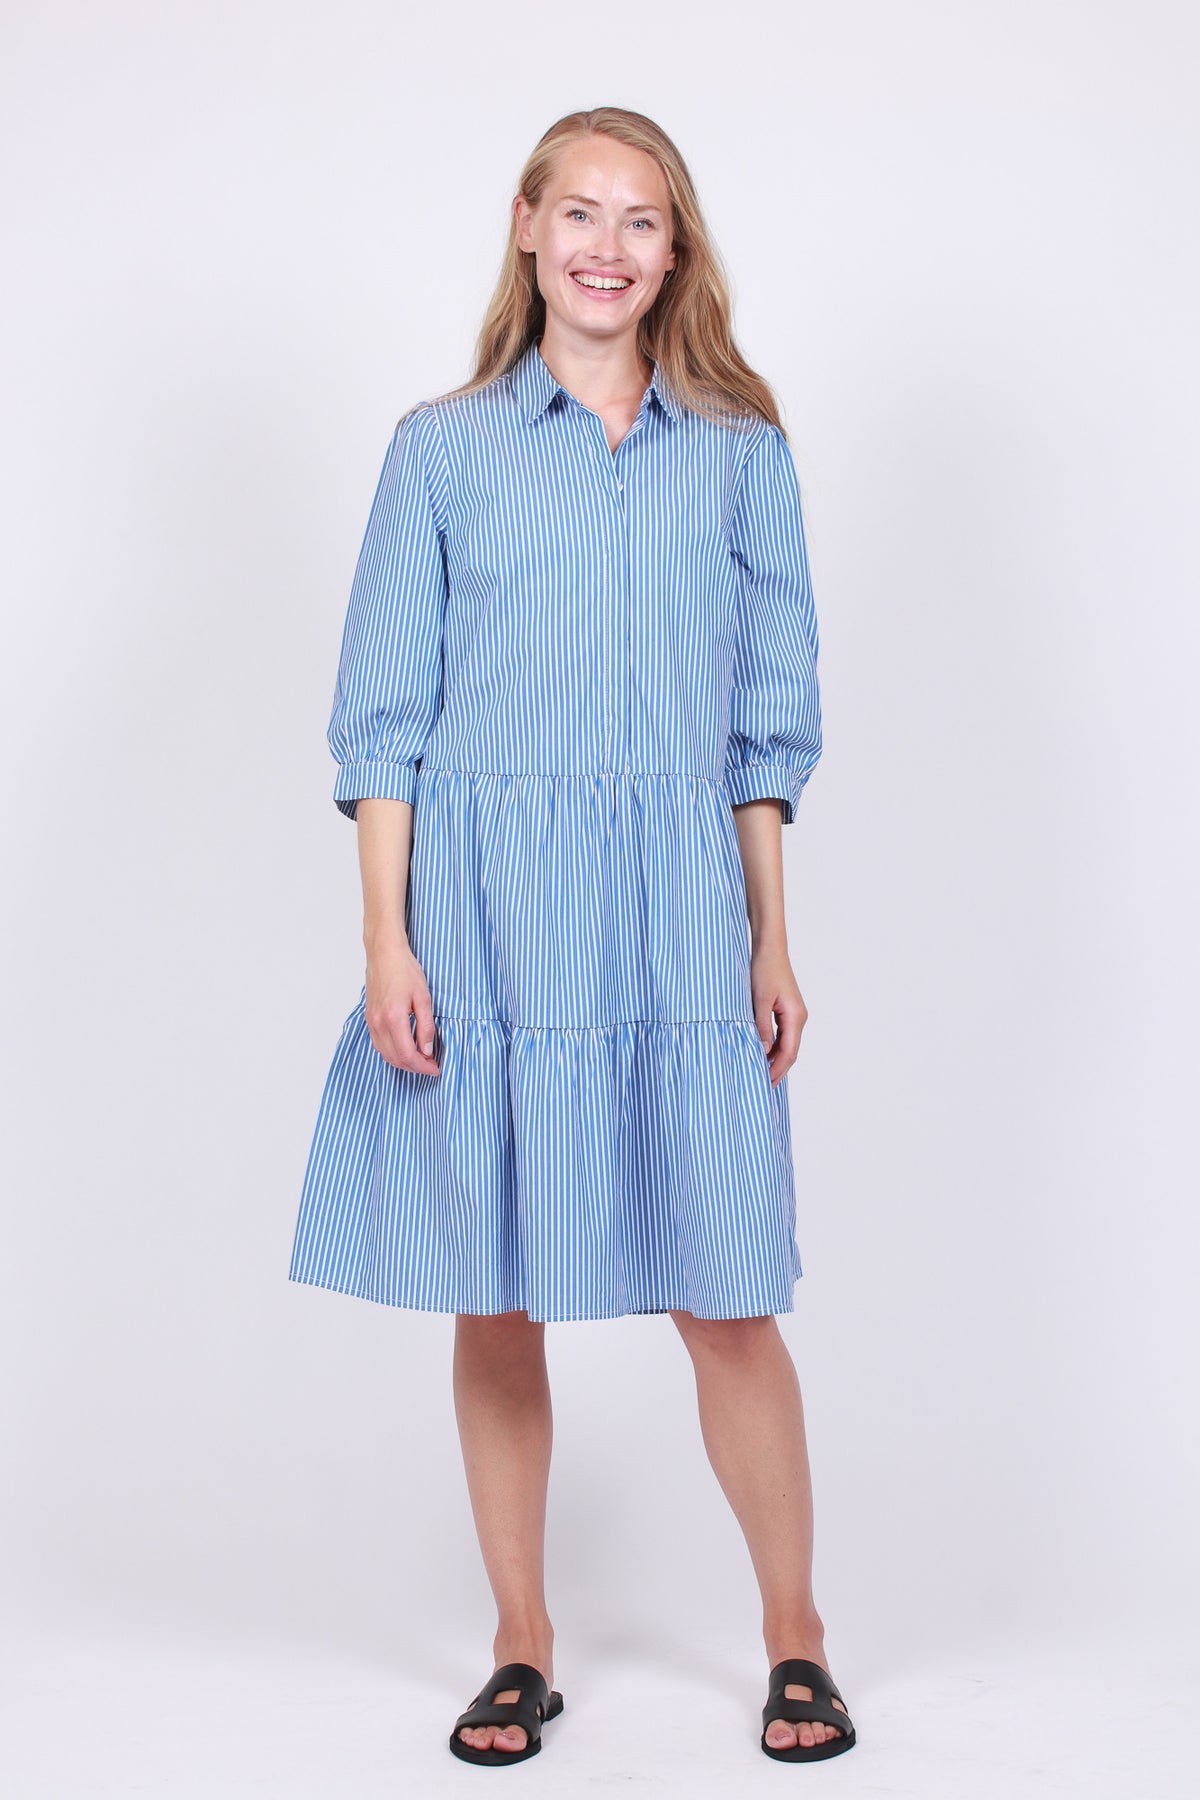 Ching Ava 3/4 Dress - Mid Blue Stripe - Moss Copenhagen - Kjoler - VILLOID.no